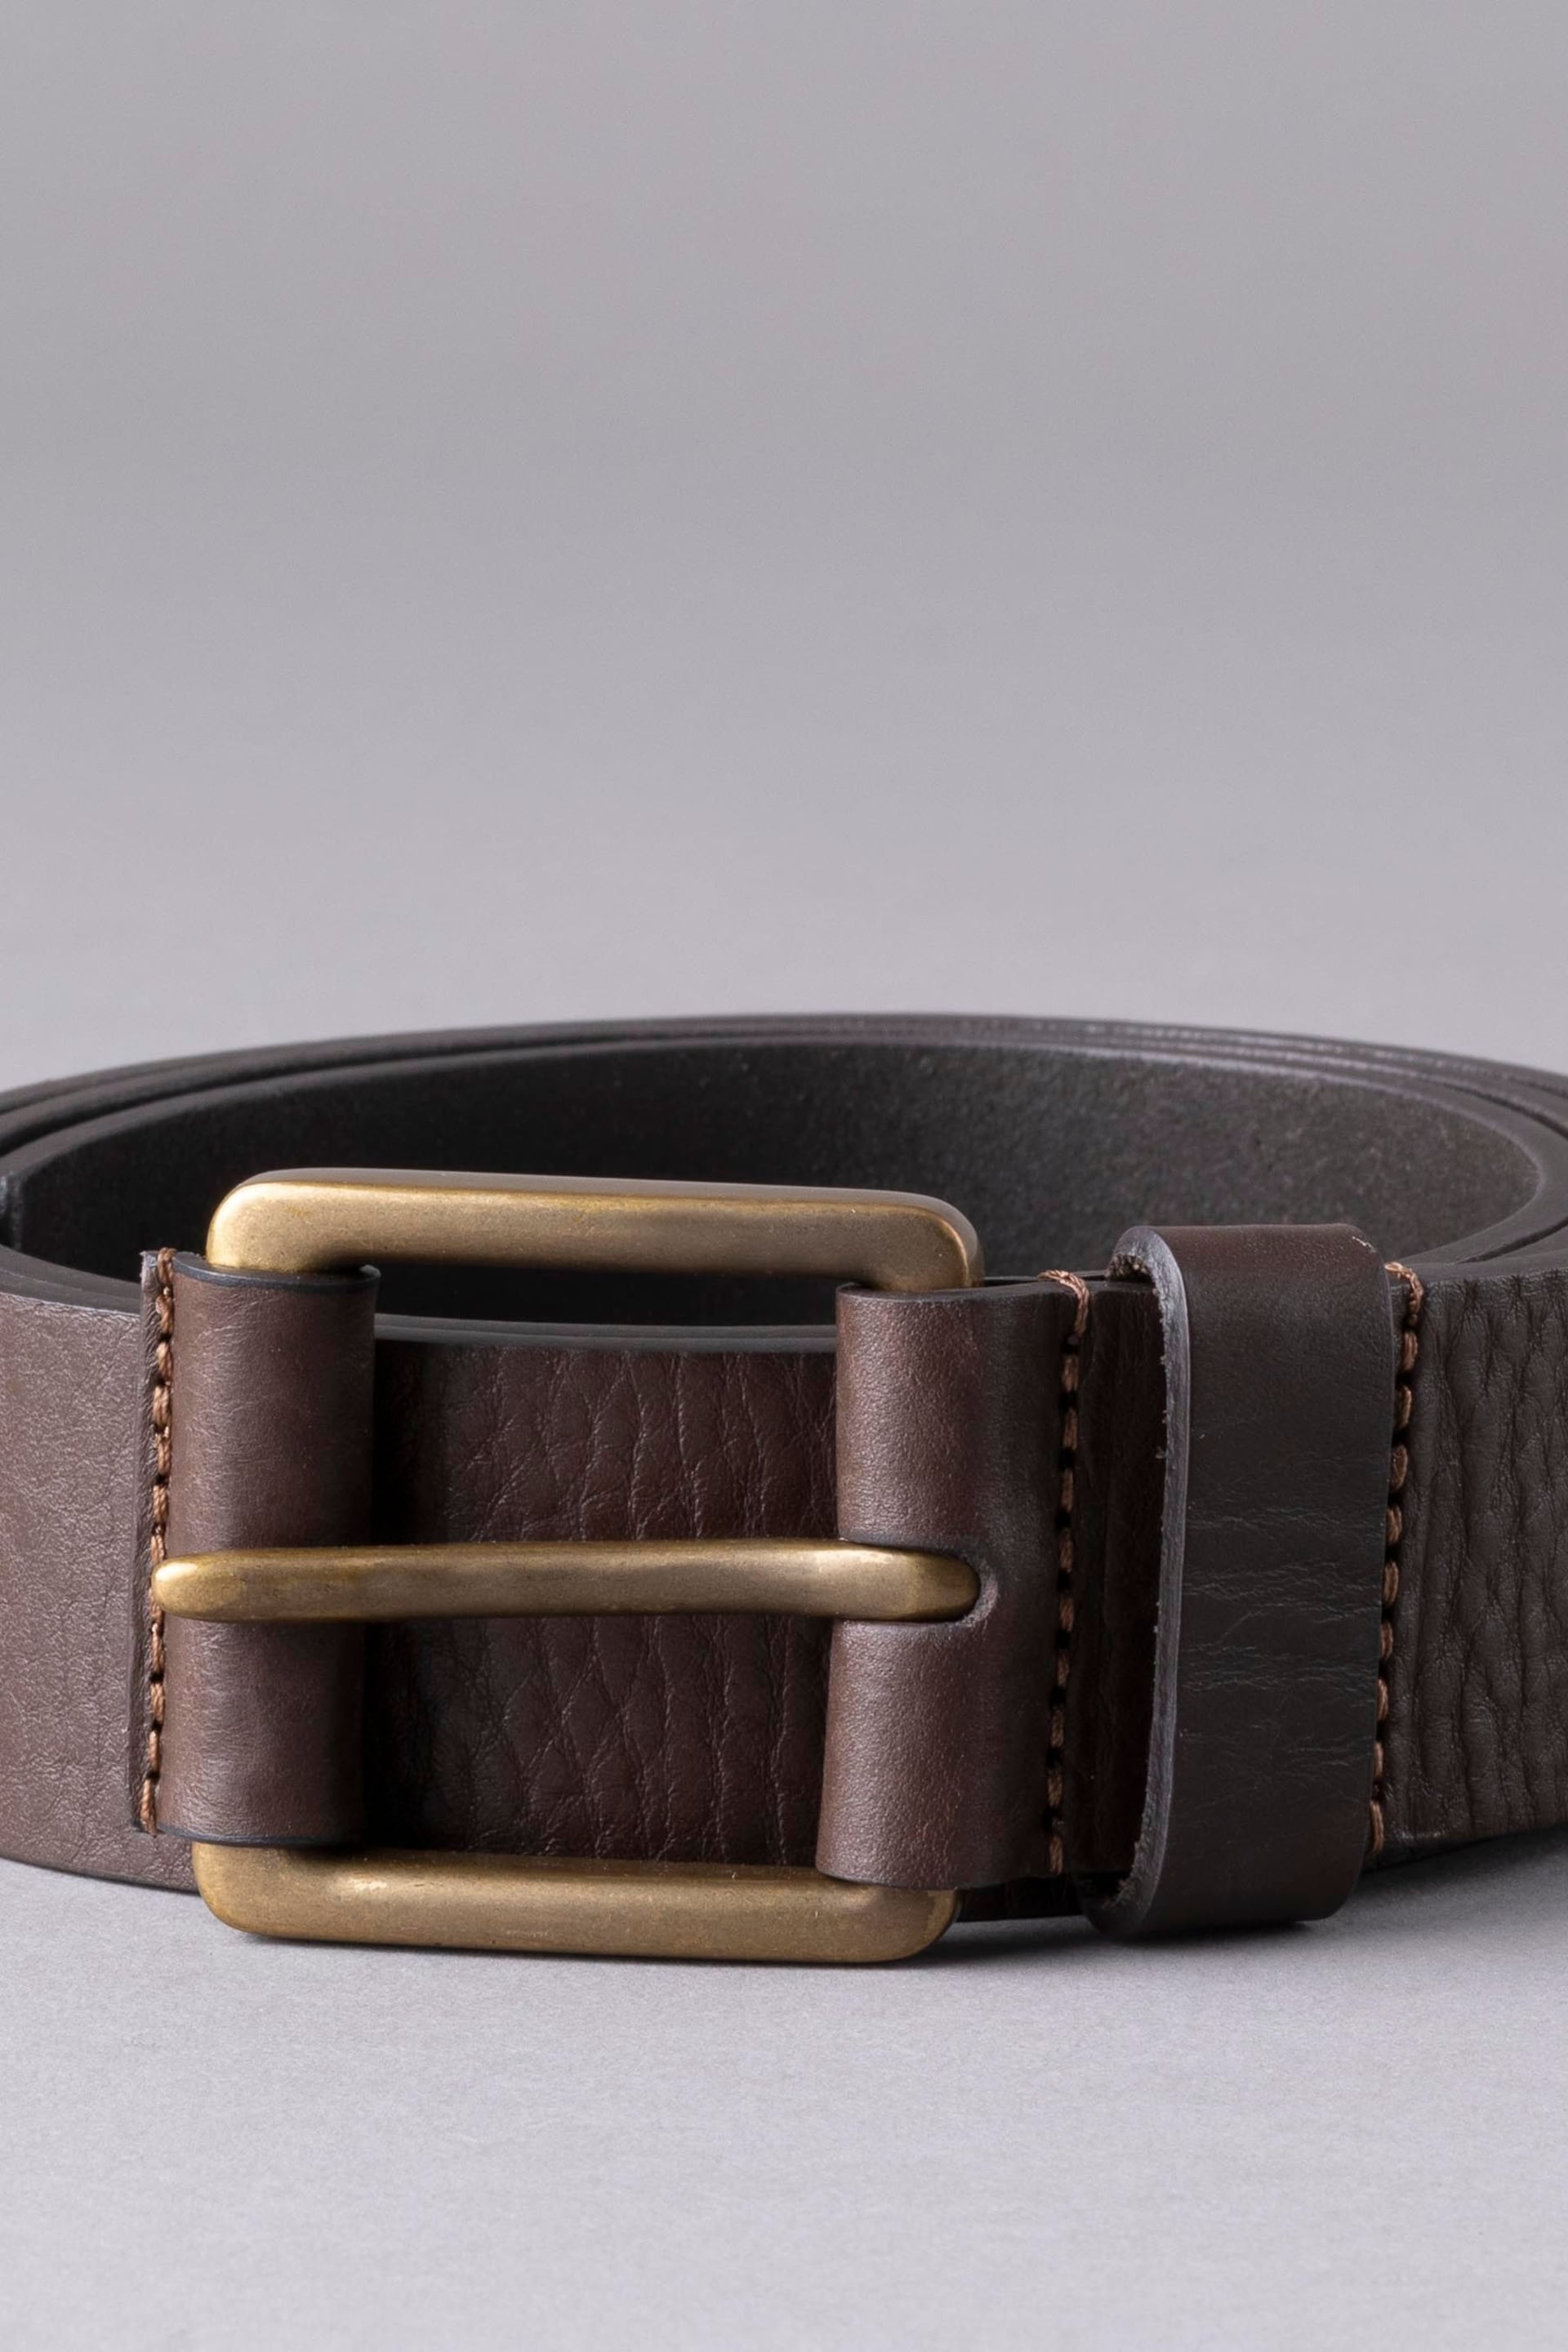 Lakeland Leather Braithwaite Leather Belt - Image 2 of 3